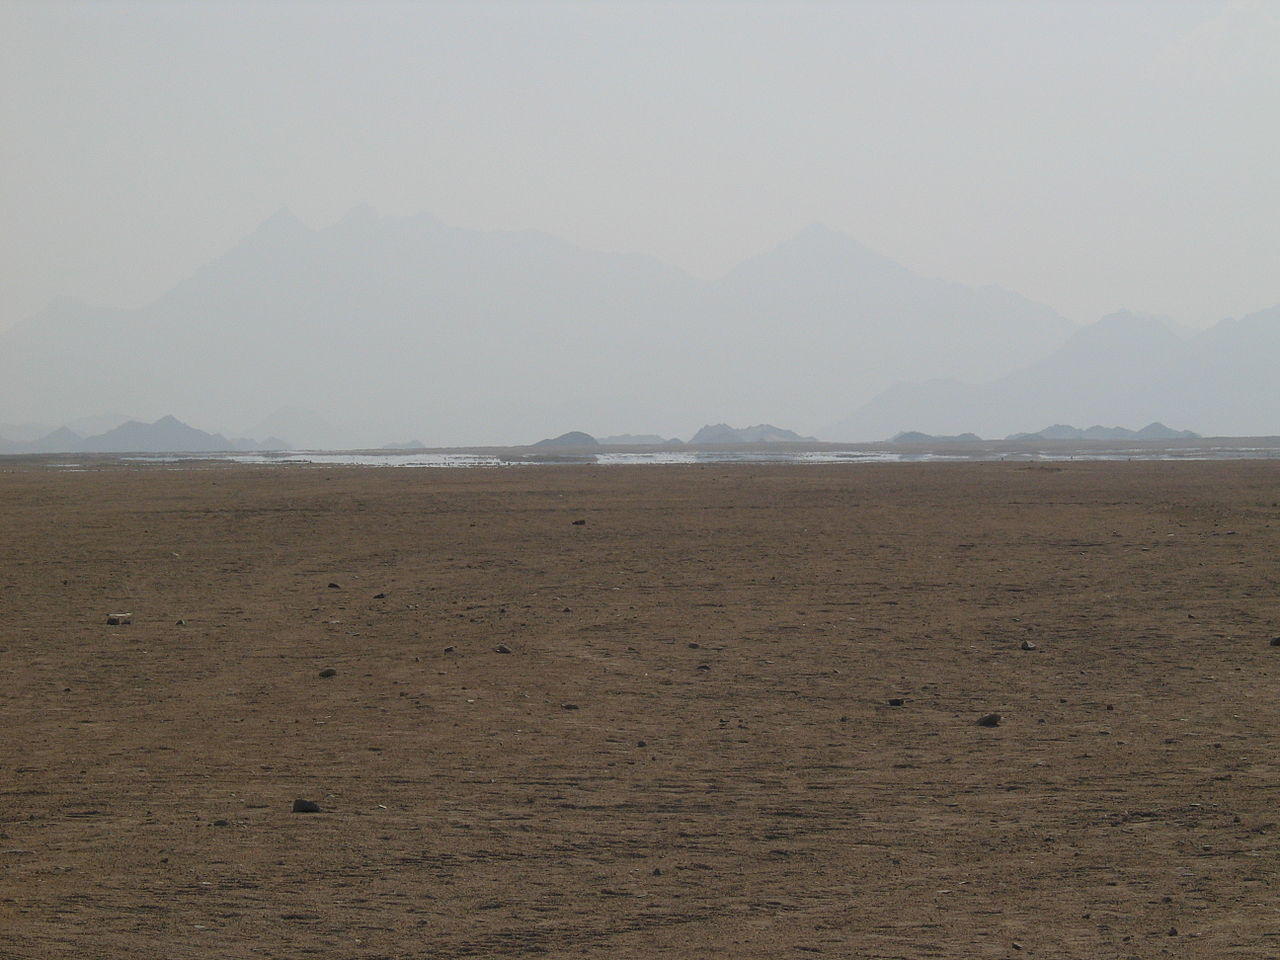 Мираж (зеркальная гладь воды) в Аравийской пустыне.